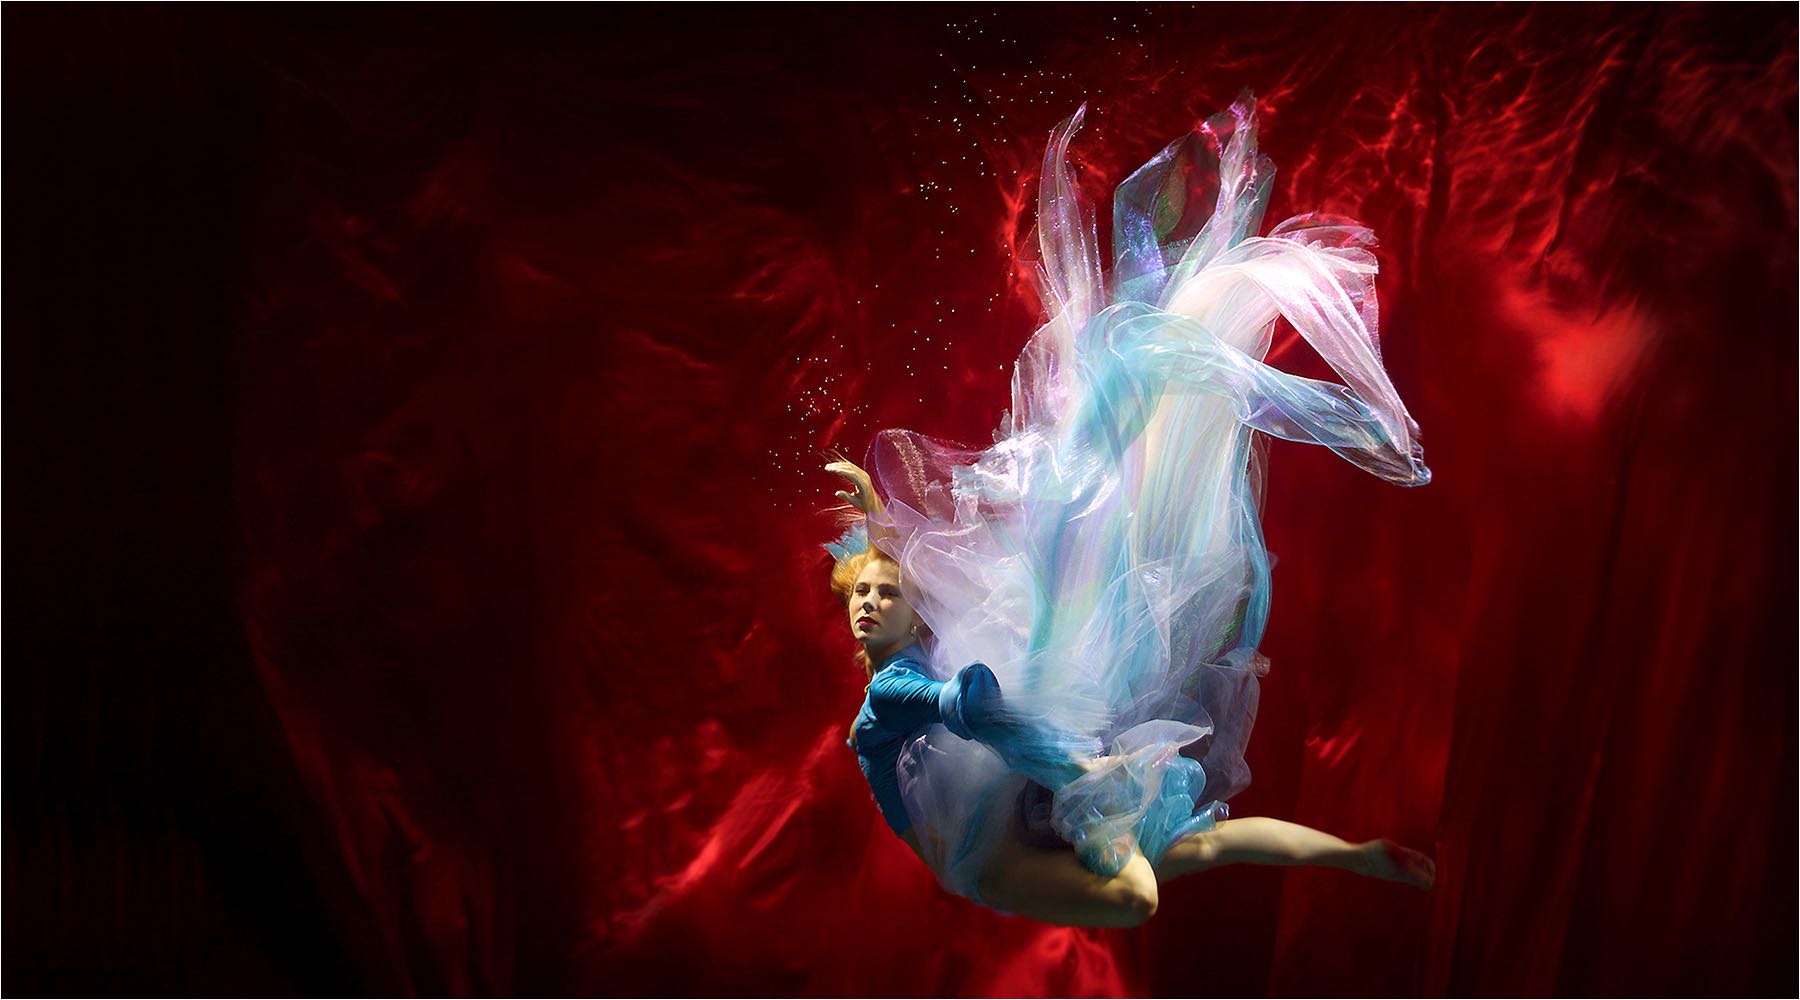  Tanzfotografie. Unterwasser Shooting mit einer Tänzerin des Chemnitzer Balletts im Designer Kleid. Aufgenommen Mit Nikon Underwater Technik und mobiler Studioblitzanlage. Copyright by Fotostudio Jörg Riethausen 